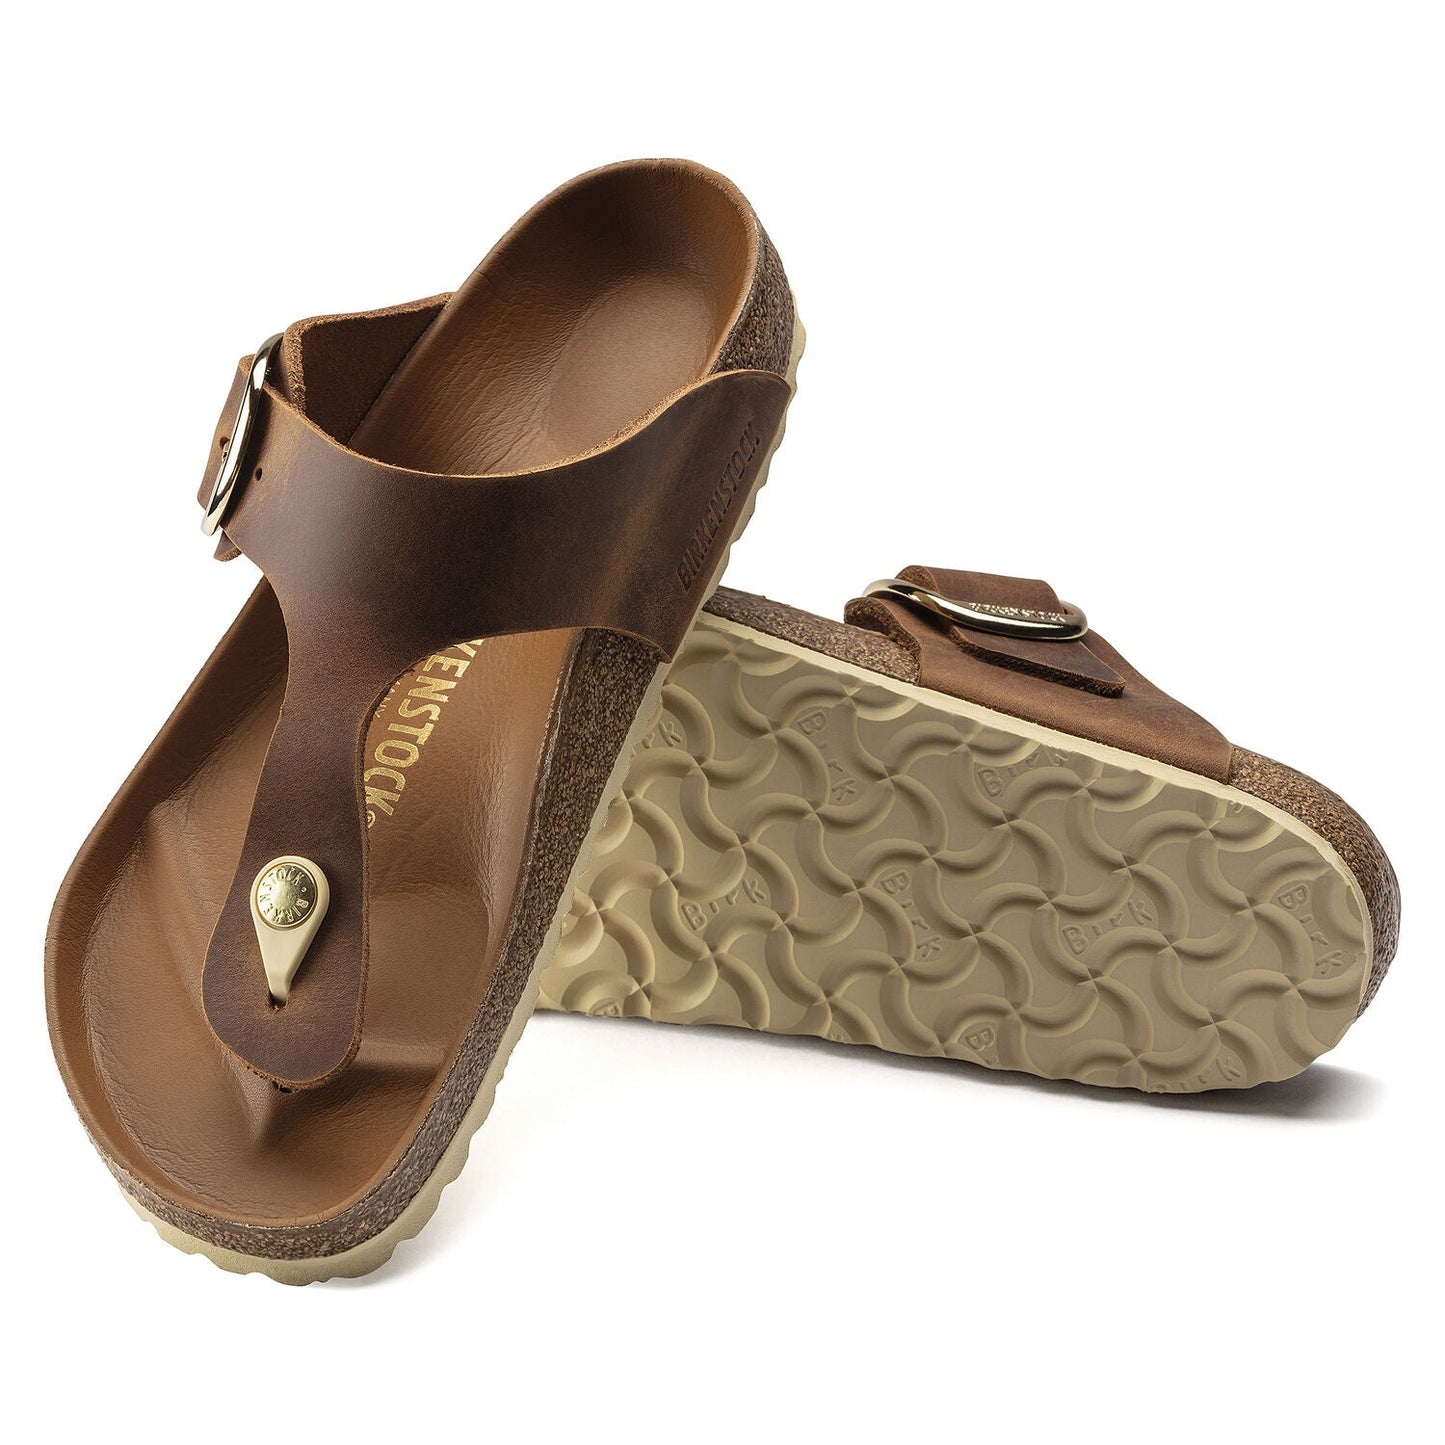 Birkenstock Sandals GIZEH BIG BUCKLE cognac brown leather regular